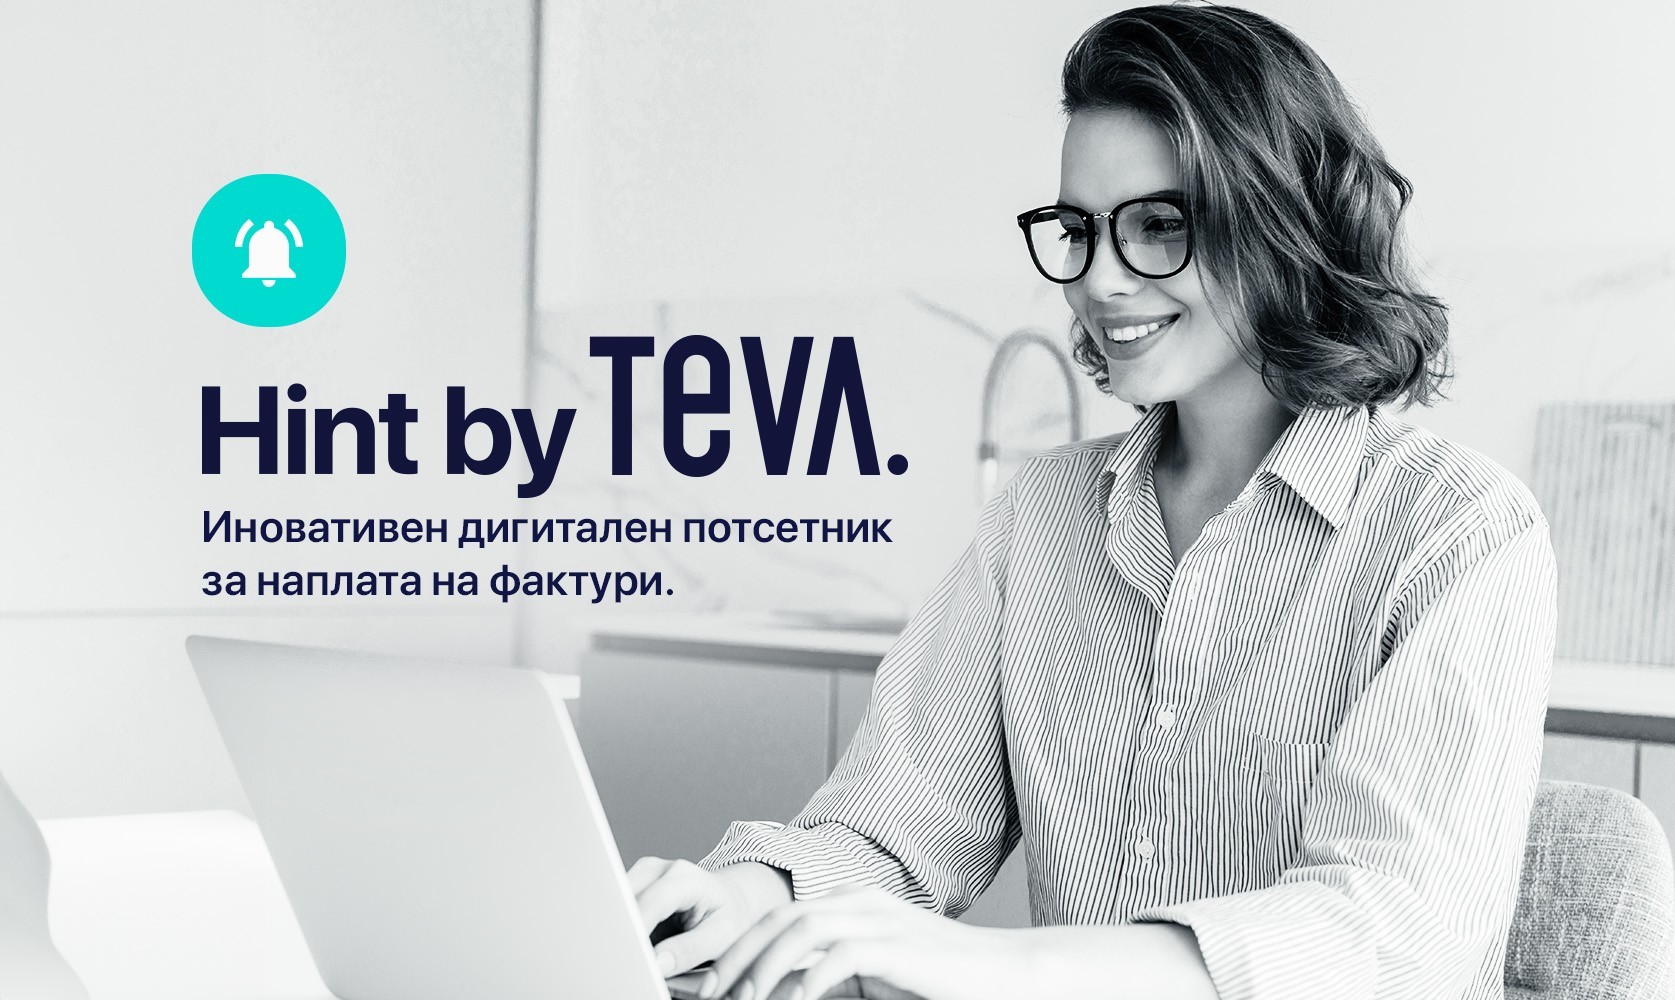 Иновативниот дигитален потсетник Hint by Teva ја трансформира наплатата на фактури кај голем број компании во Македонија